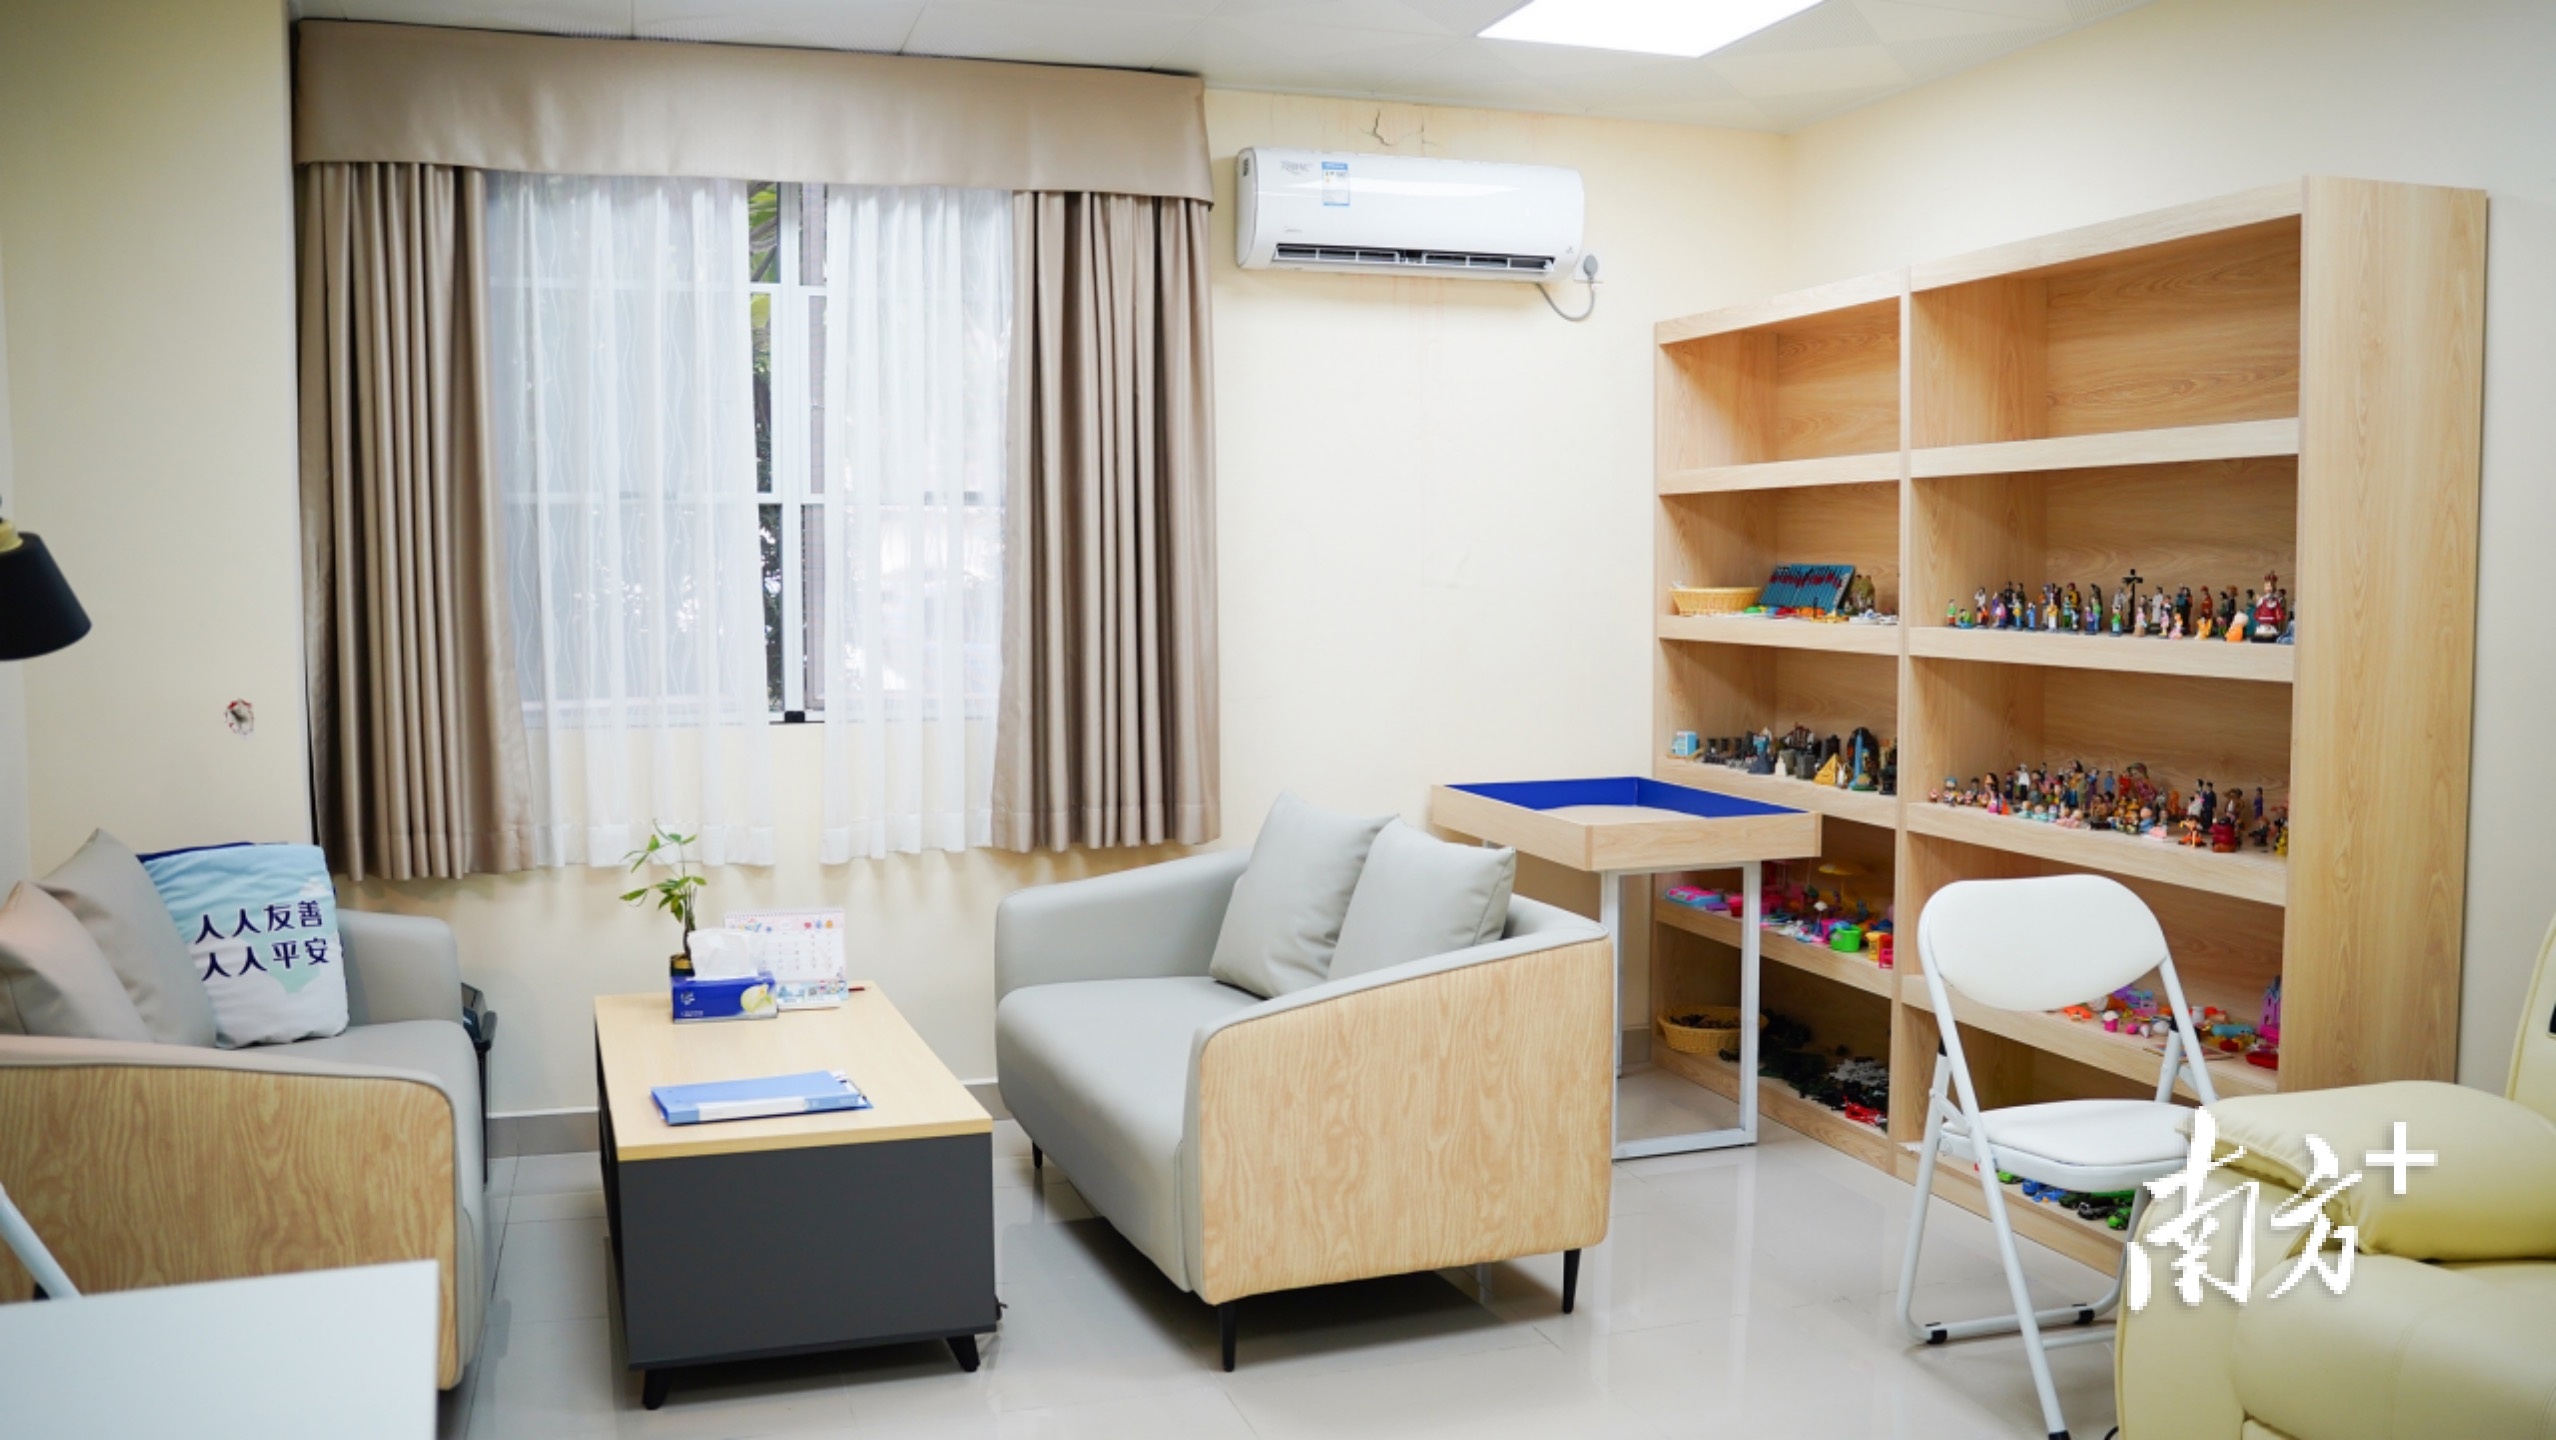 东莞市东城街道综合治理办心理咨询室一角。受访者供图。